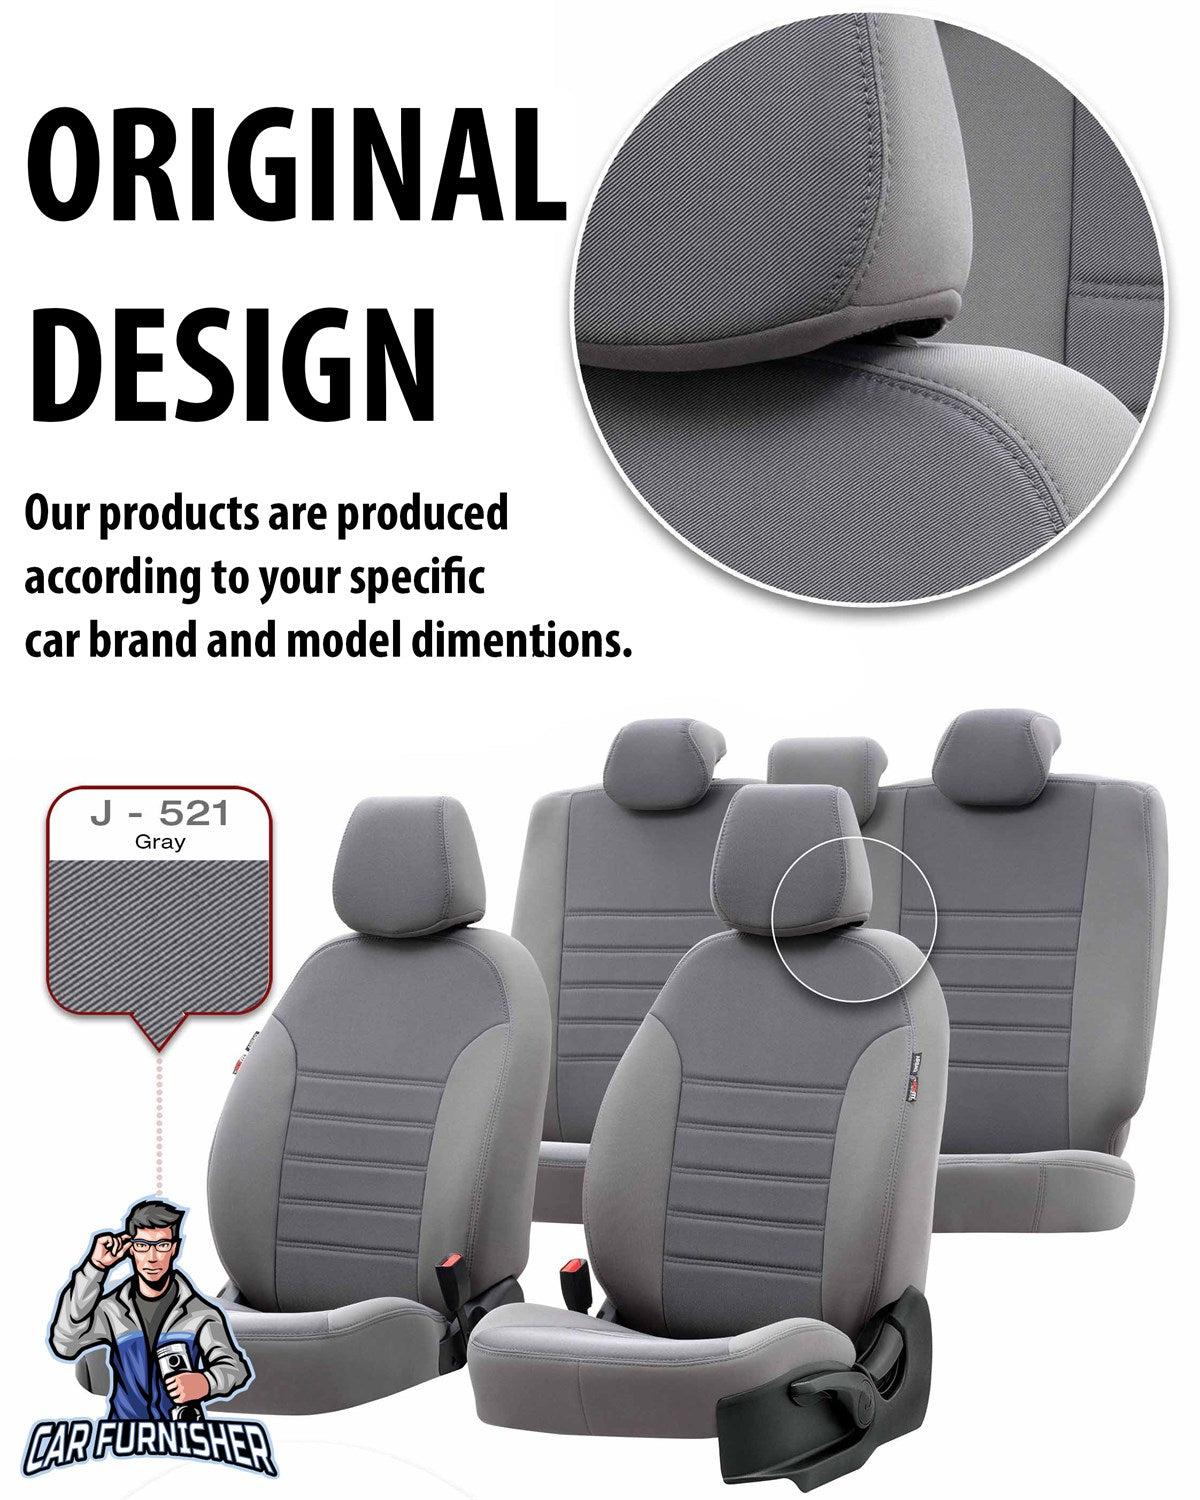 Mini Countryman Seat Covers Original Jacquard Design Smoked Black Jacquard Fabric